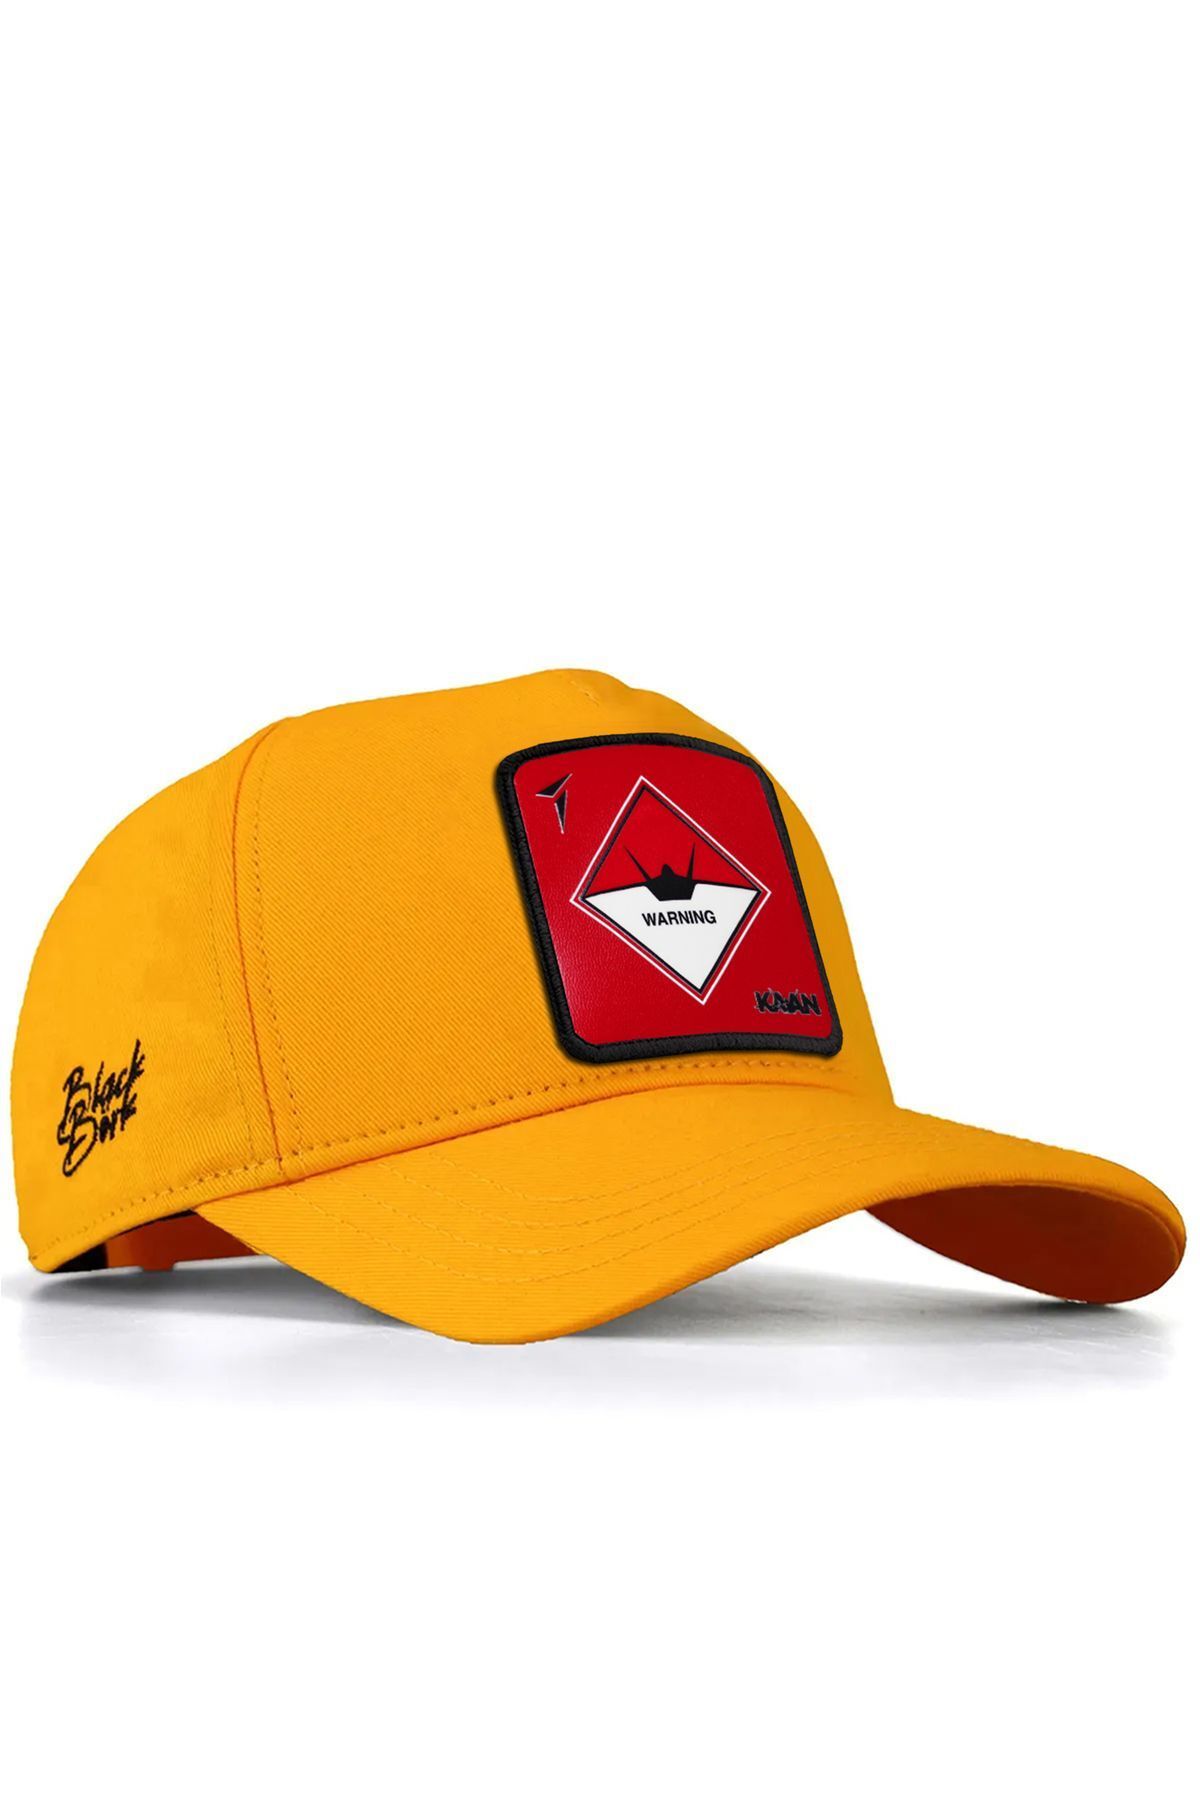 BlackBörk V1 Baseball Dikkat Kaan Lisanlı Sarı Şapka